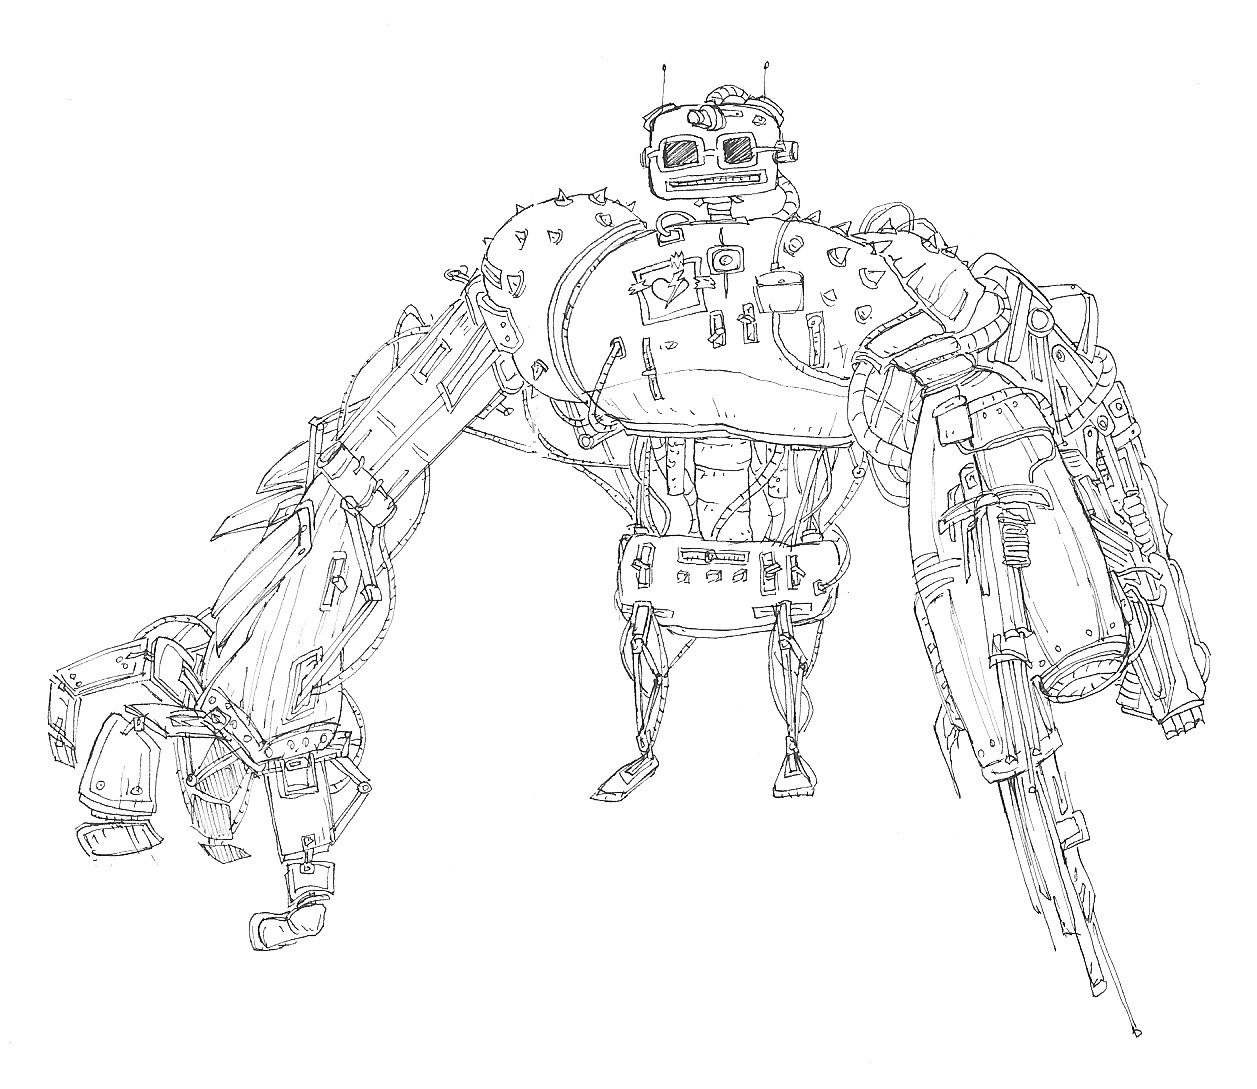 Robot concept doodle